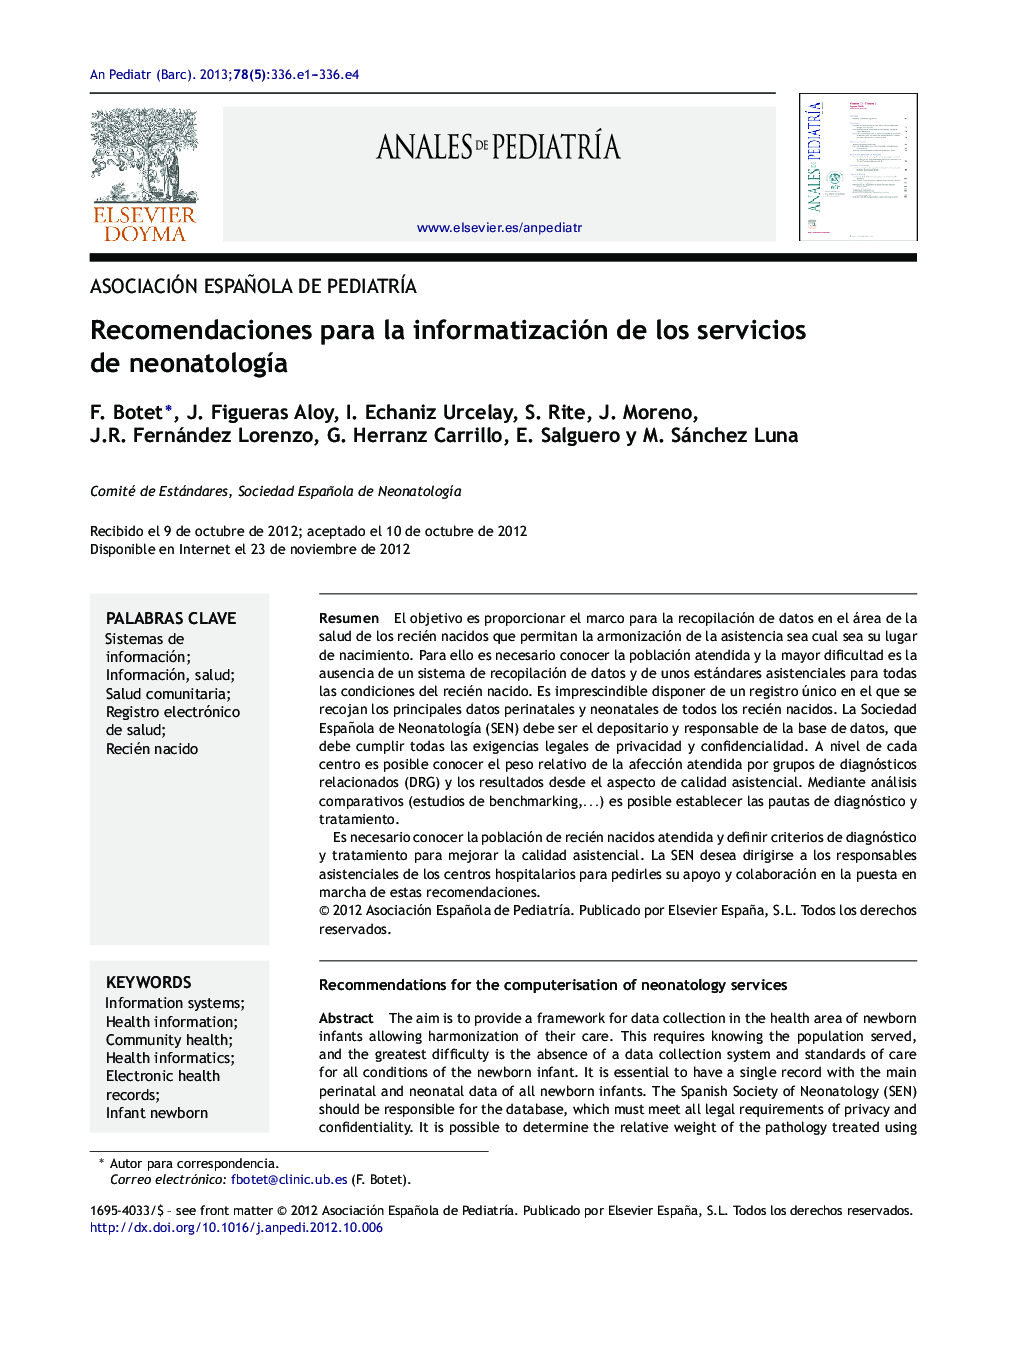 Recomendaciones para la informatización de los servicios de neonatologÃ­a